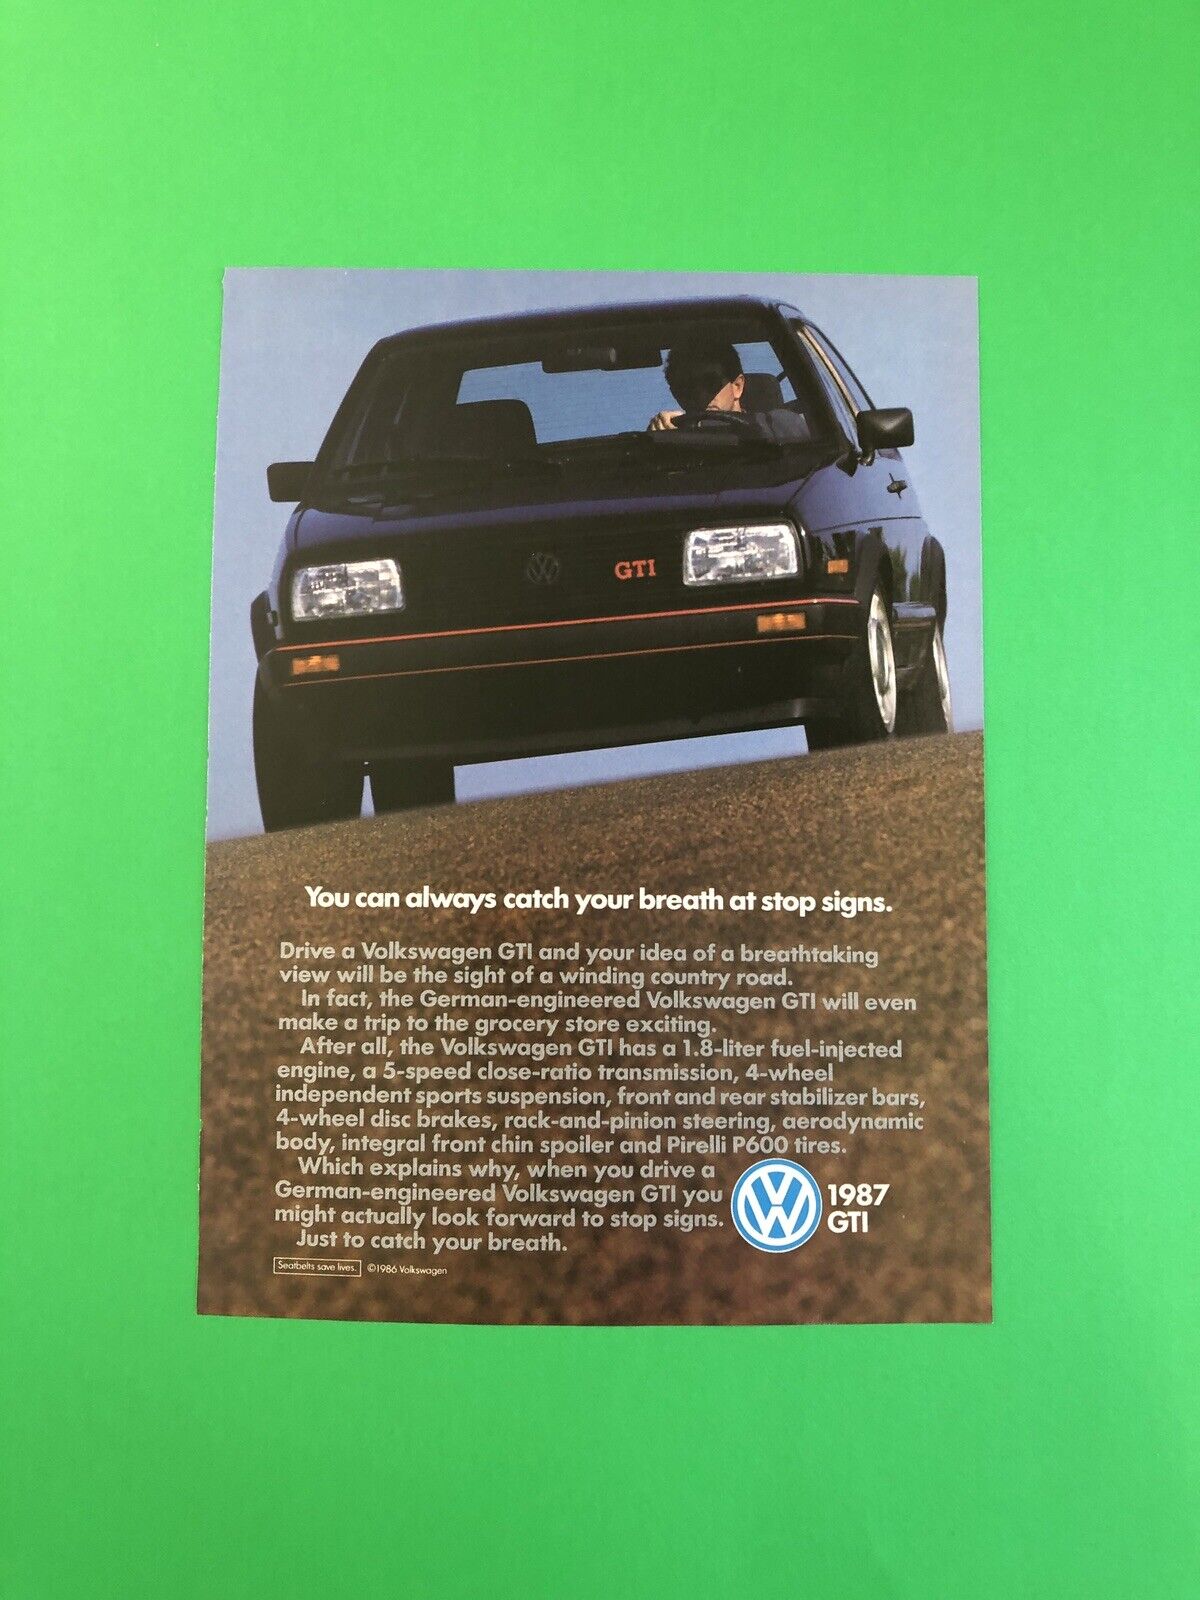 1987 VOLKSWAGEN GTI VW VINTAGE ORIGINAL PRINT AD ADVERTISEMENT PRINTED